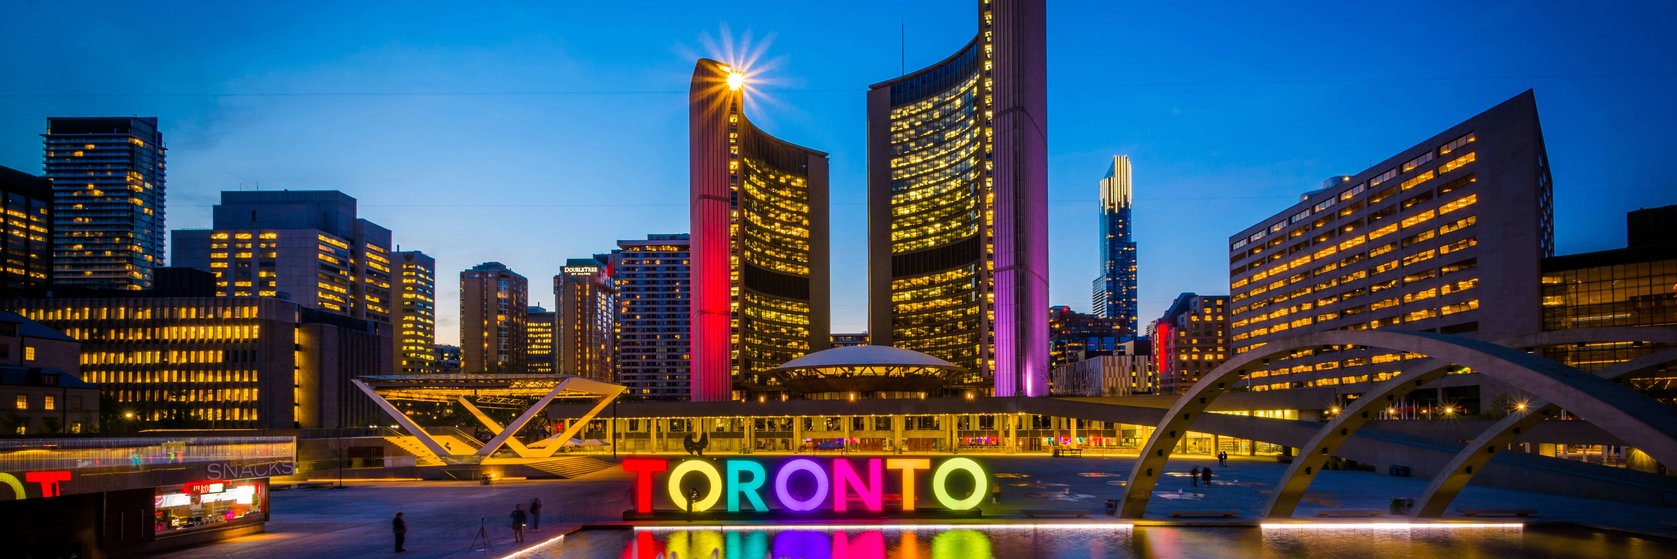 Hotely Ontario - Toronto